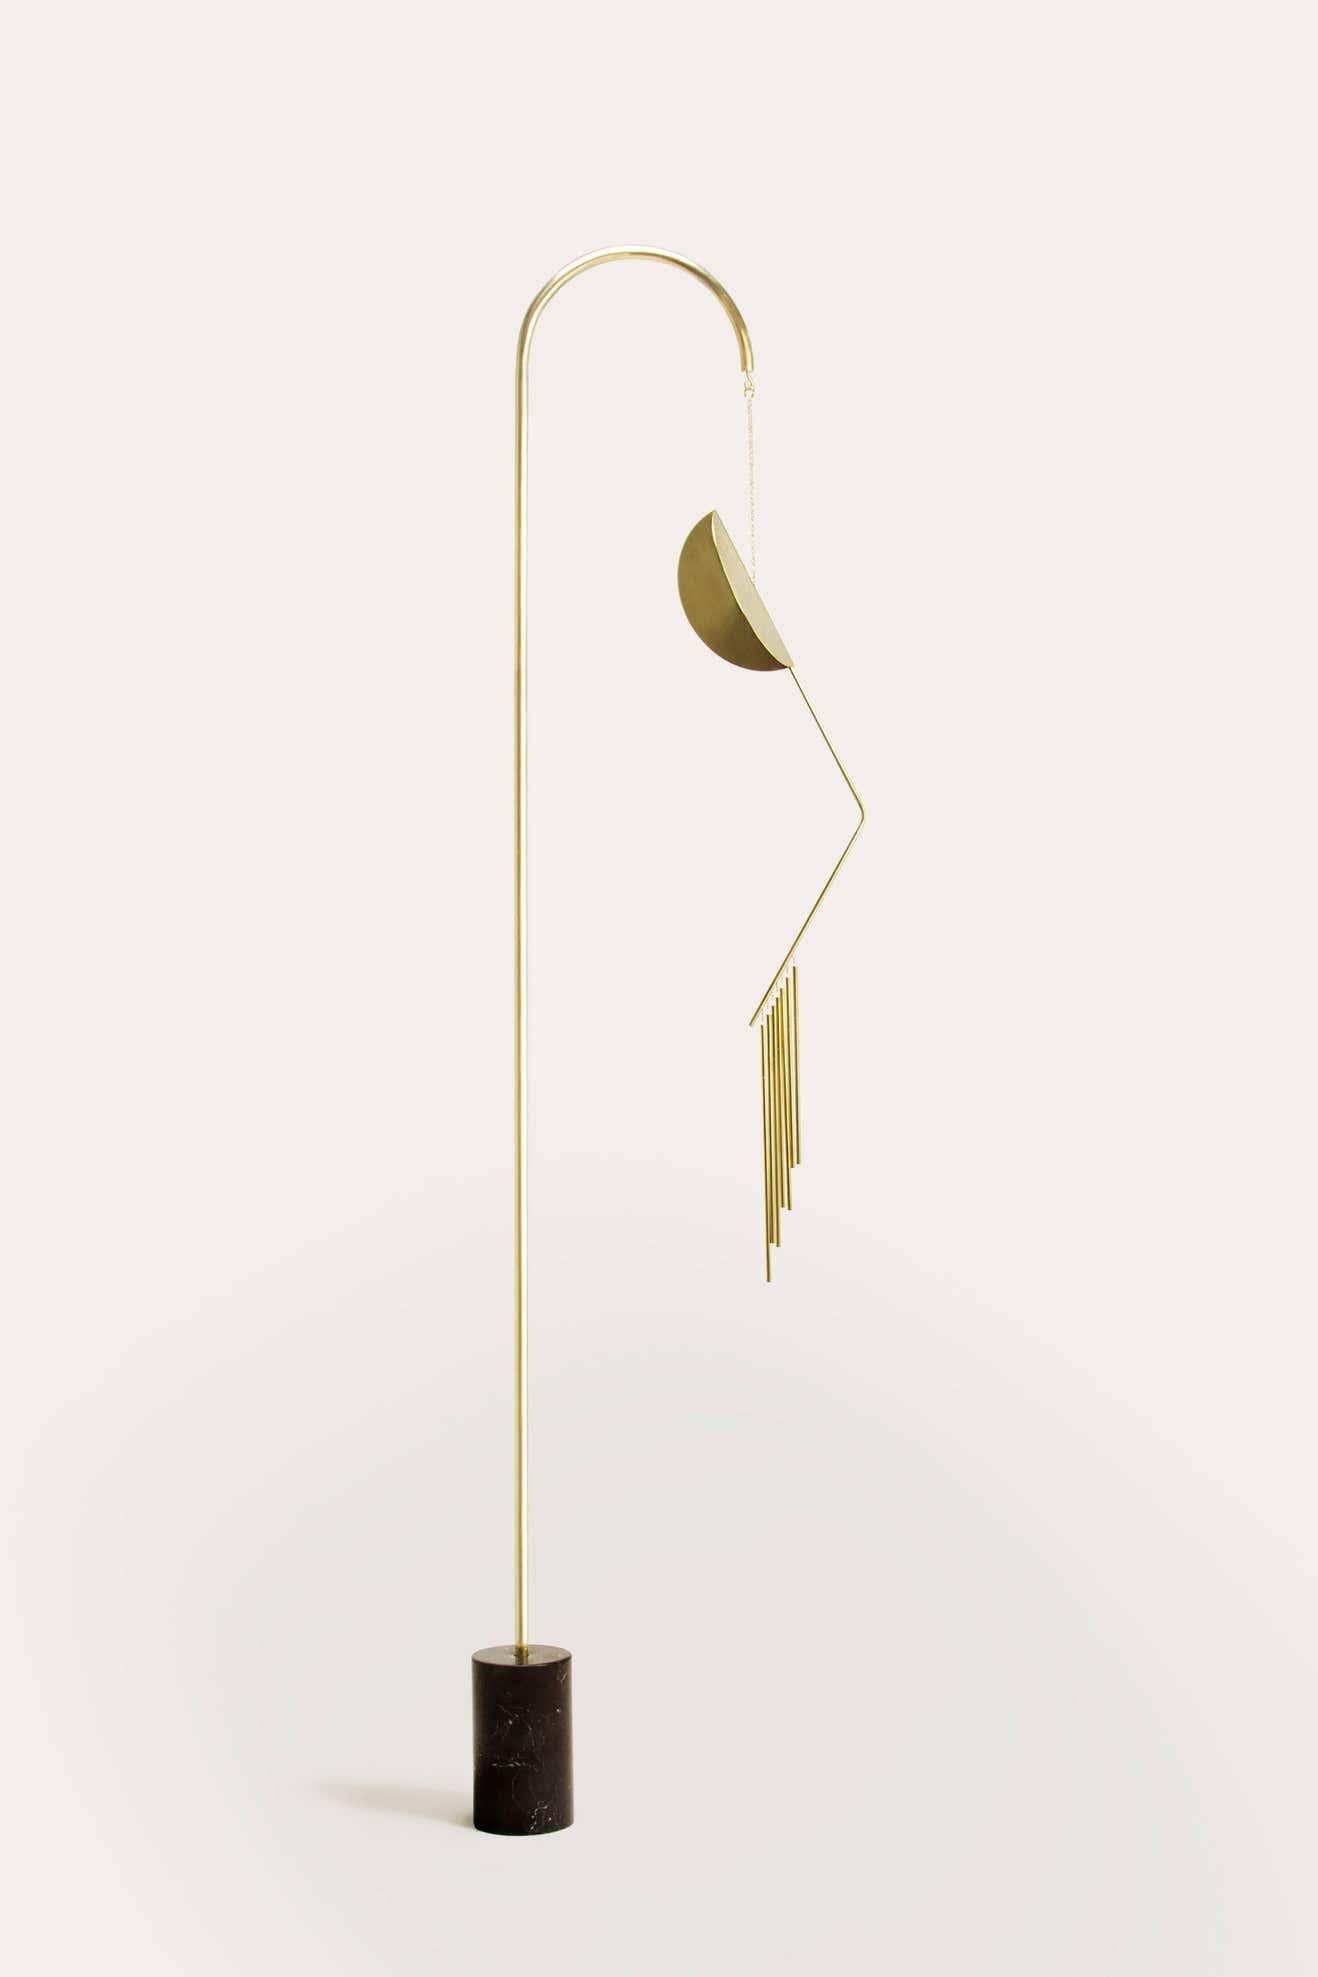 Agustina Bottoni - Melodicware - sculpture sonore
2018
Sculpté par Agustina Bottoni
Sculpté à la main en Italie
MATERIAL : laiton massif avec finition satinée.
base en marbre noir Marquina ou blanc Carrara
Dimensions : 185 cm x 50 cm / 73'' x